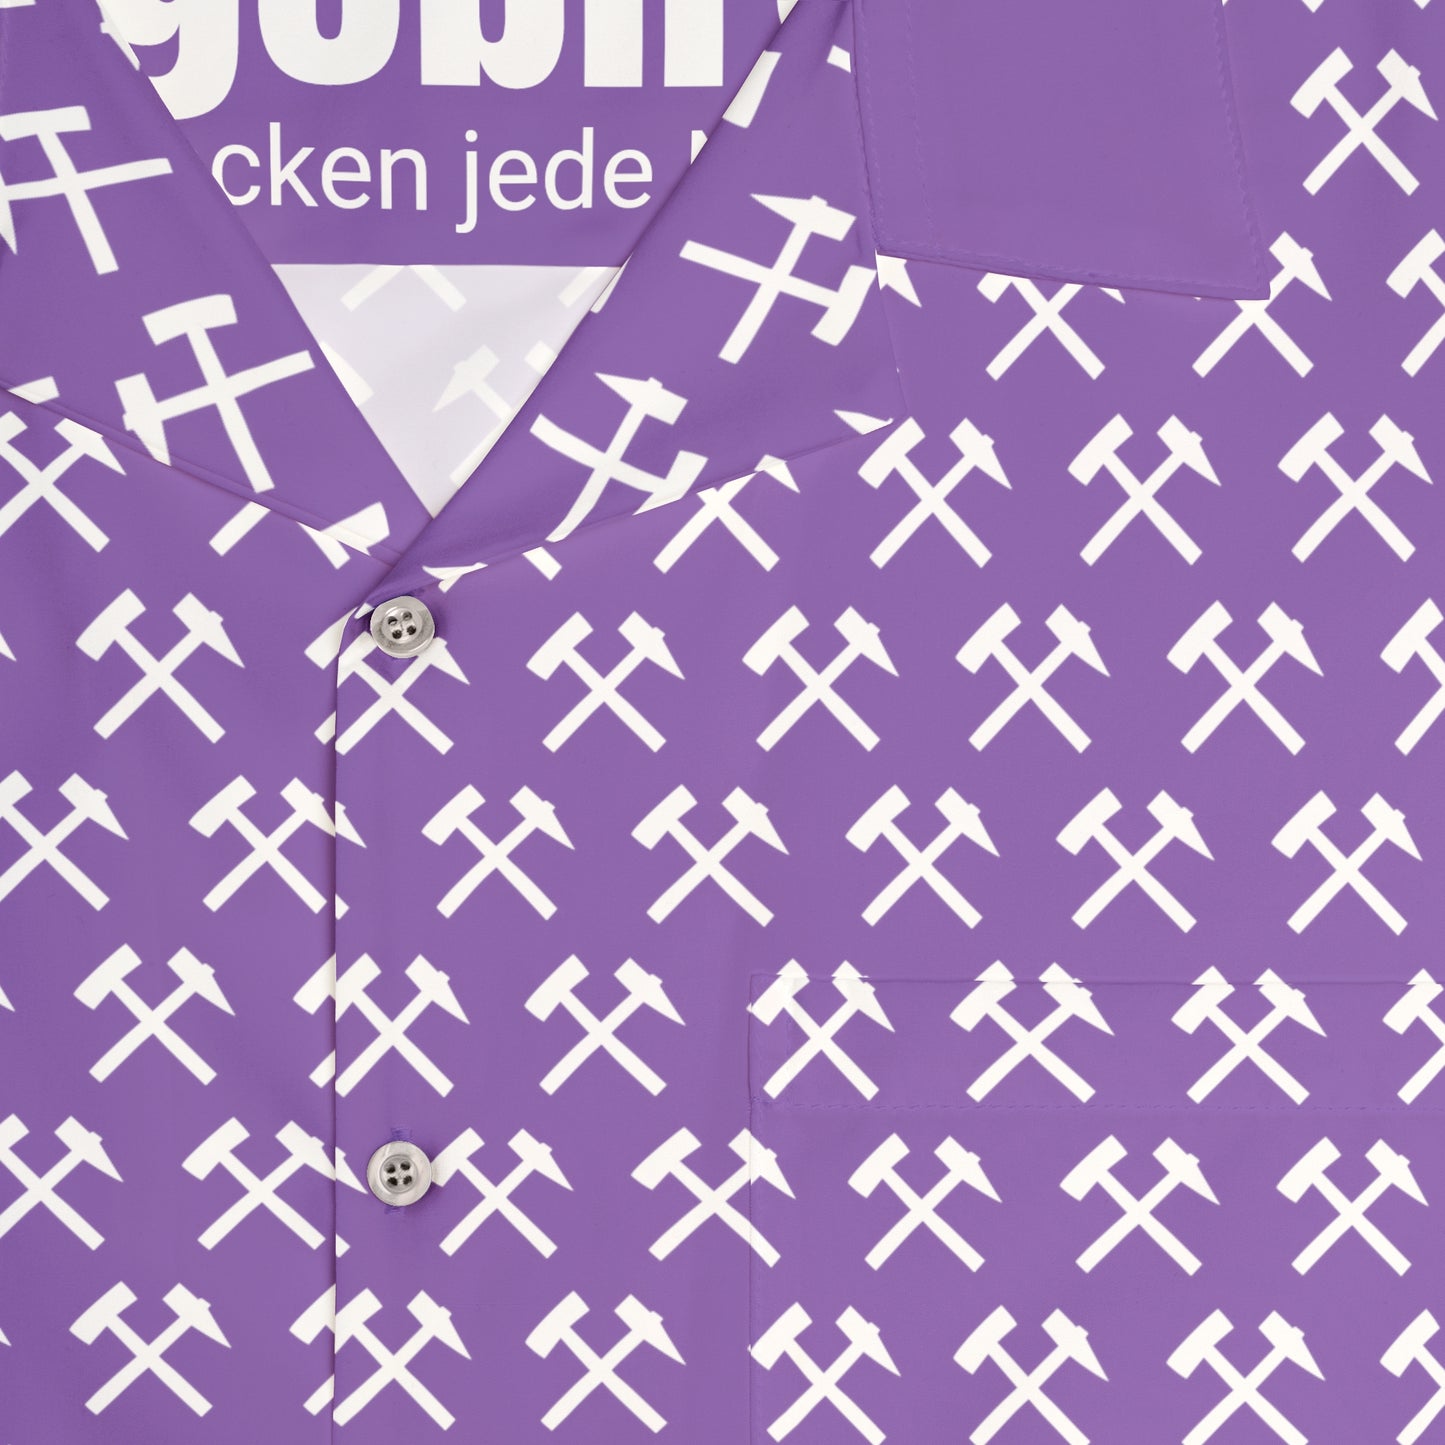 Haamit StylERZ - Hemd - Knacken jede Nuss! light purple